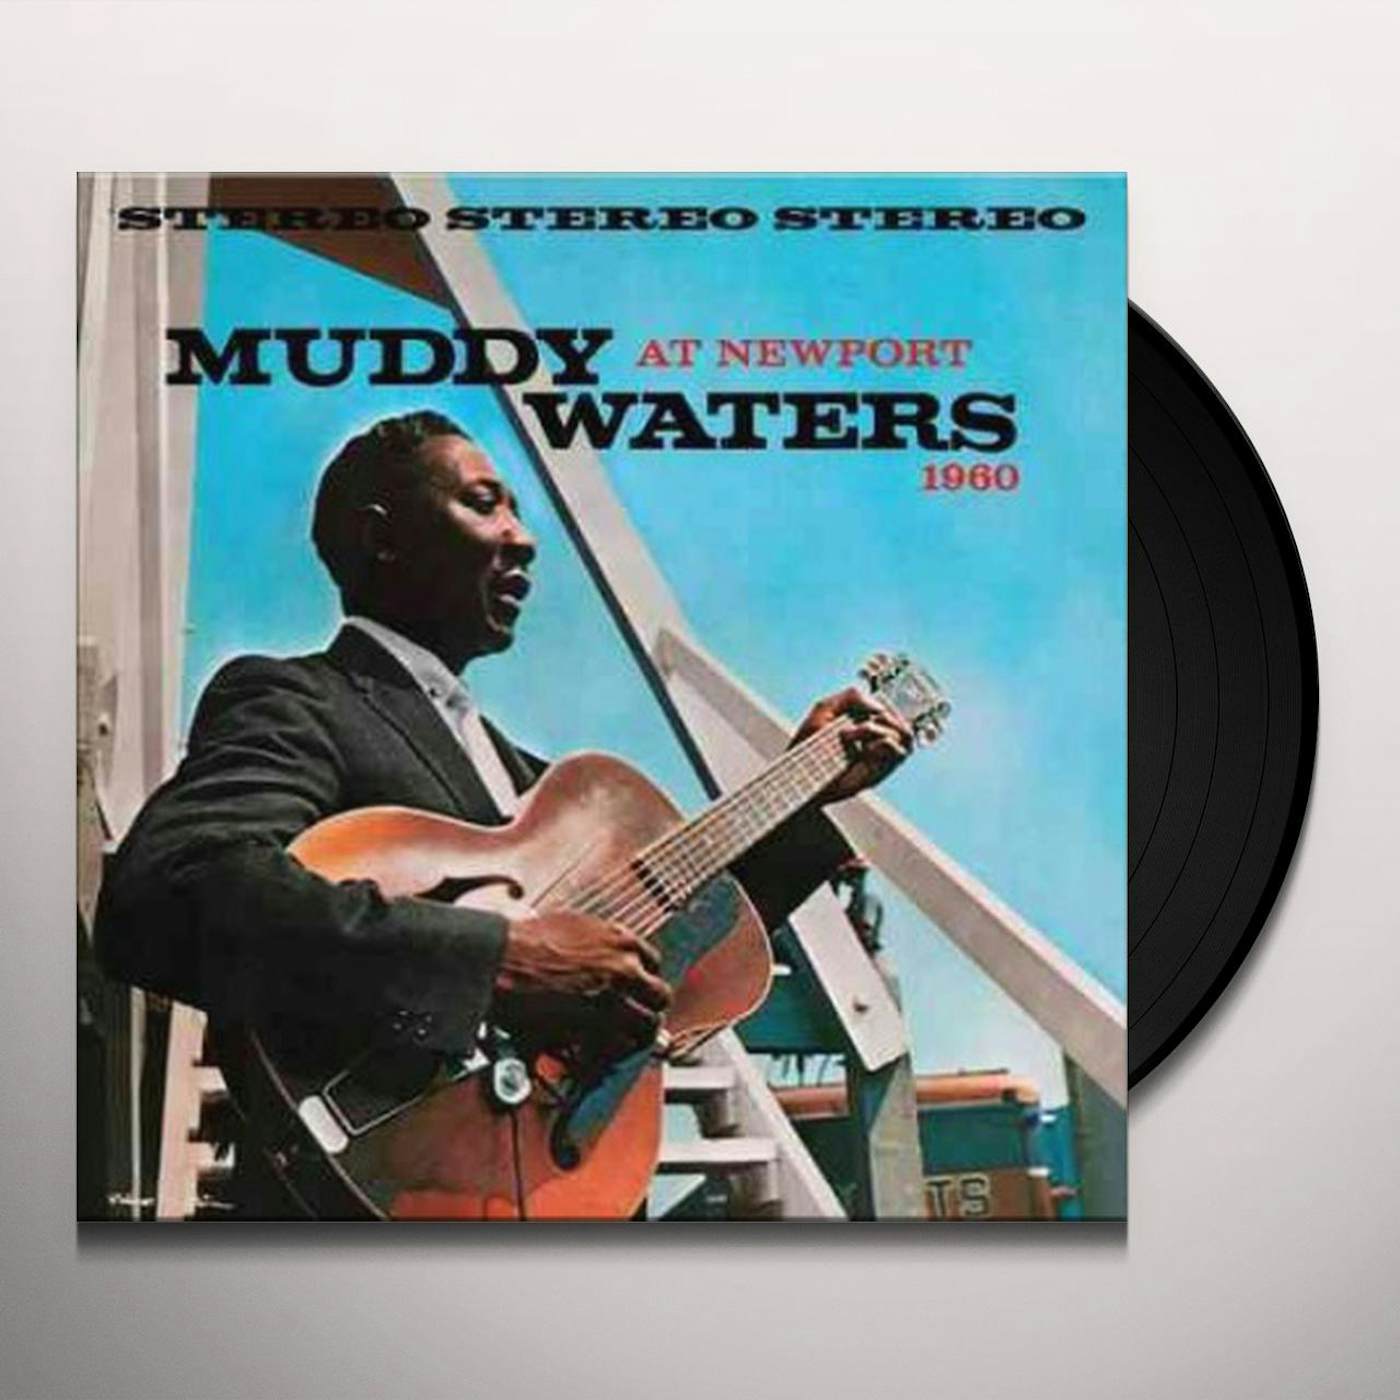 Muddy Waters Blues Band Muddy Waters at Newport 1960 Vinyl Record